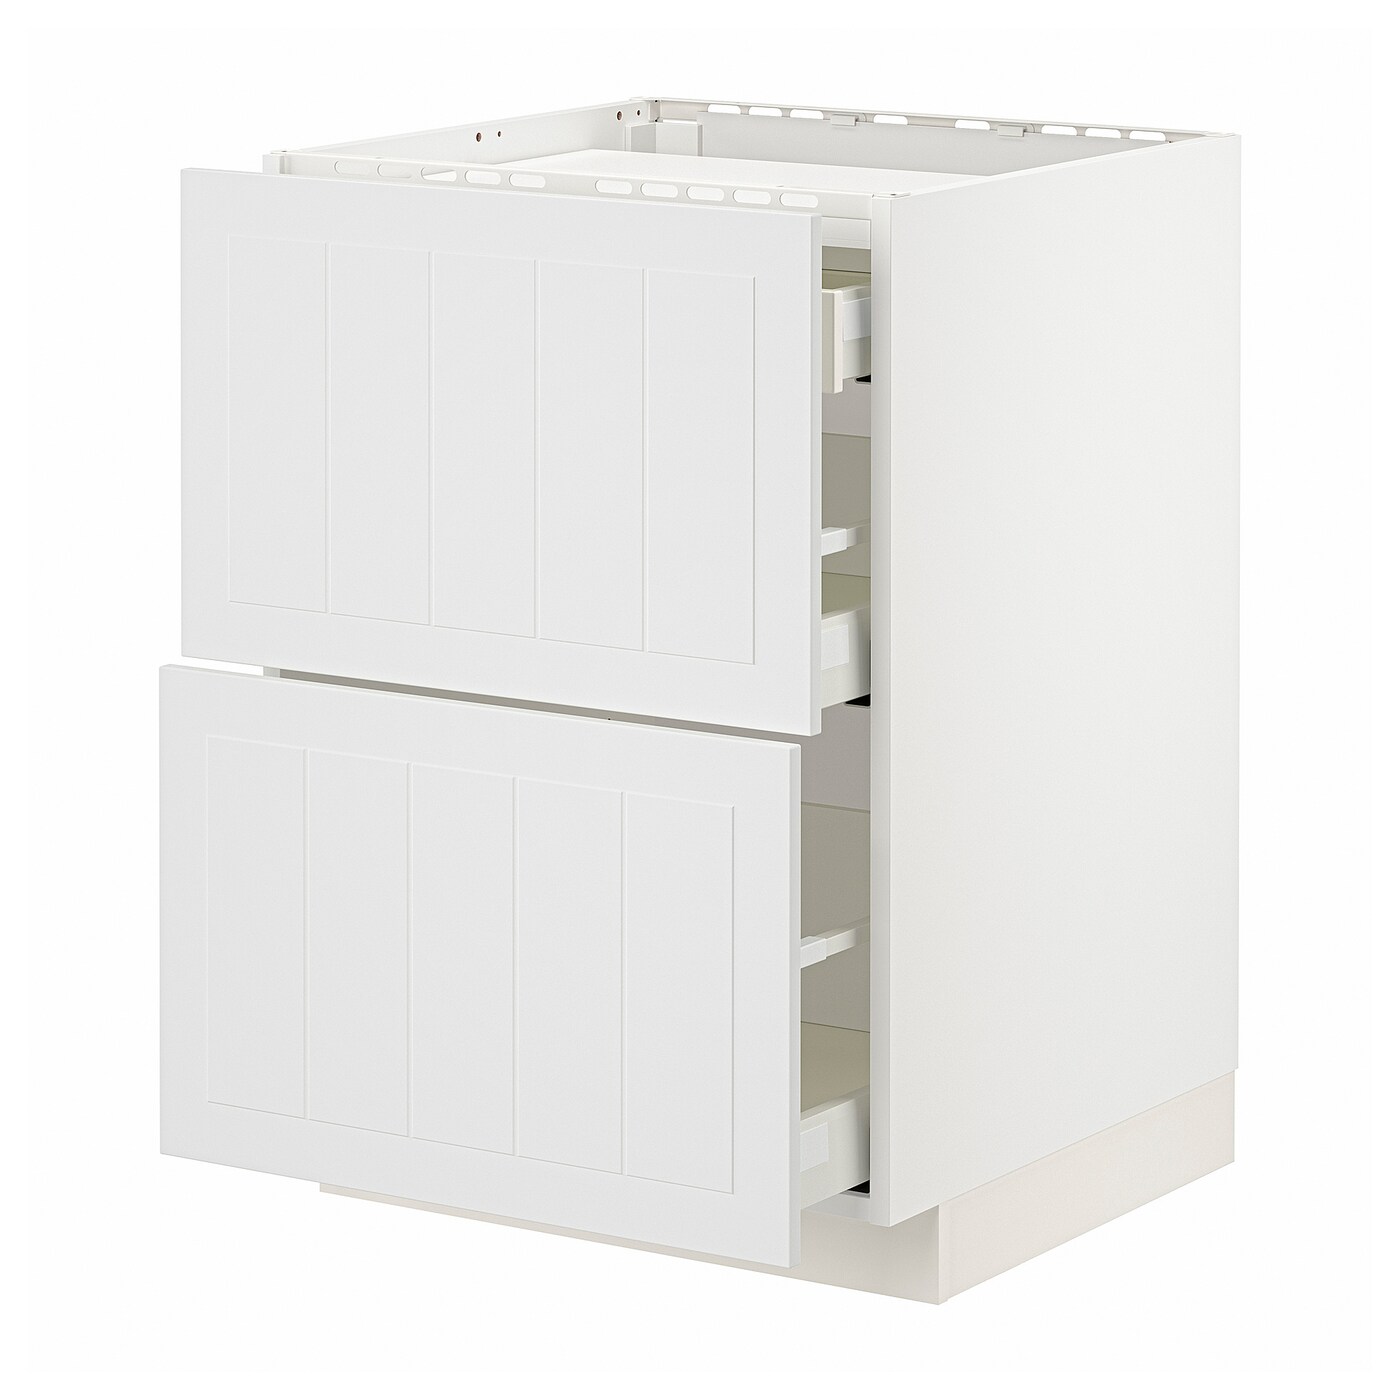 Напольный шкаф - IKEA METOD MAXIMERA, 88x62x60см, белый, МЕТОД МАКСИМЕРА ИКЕА